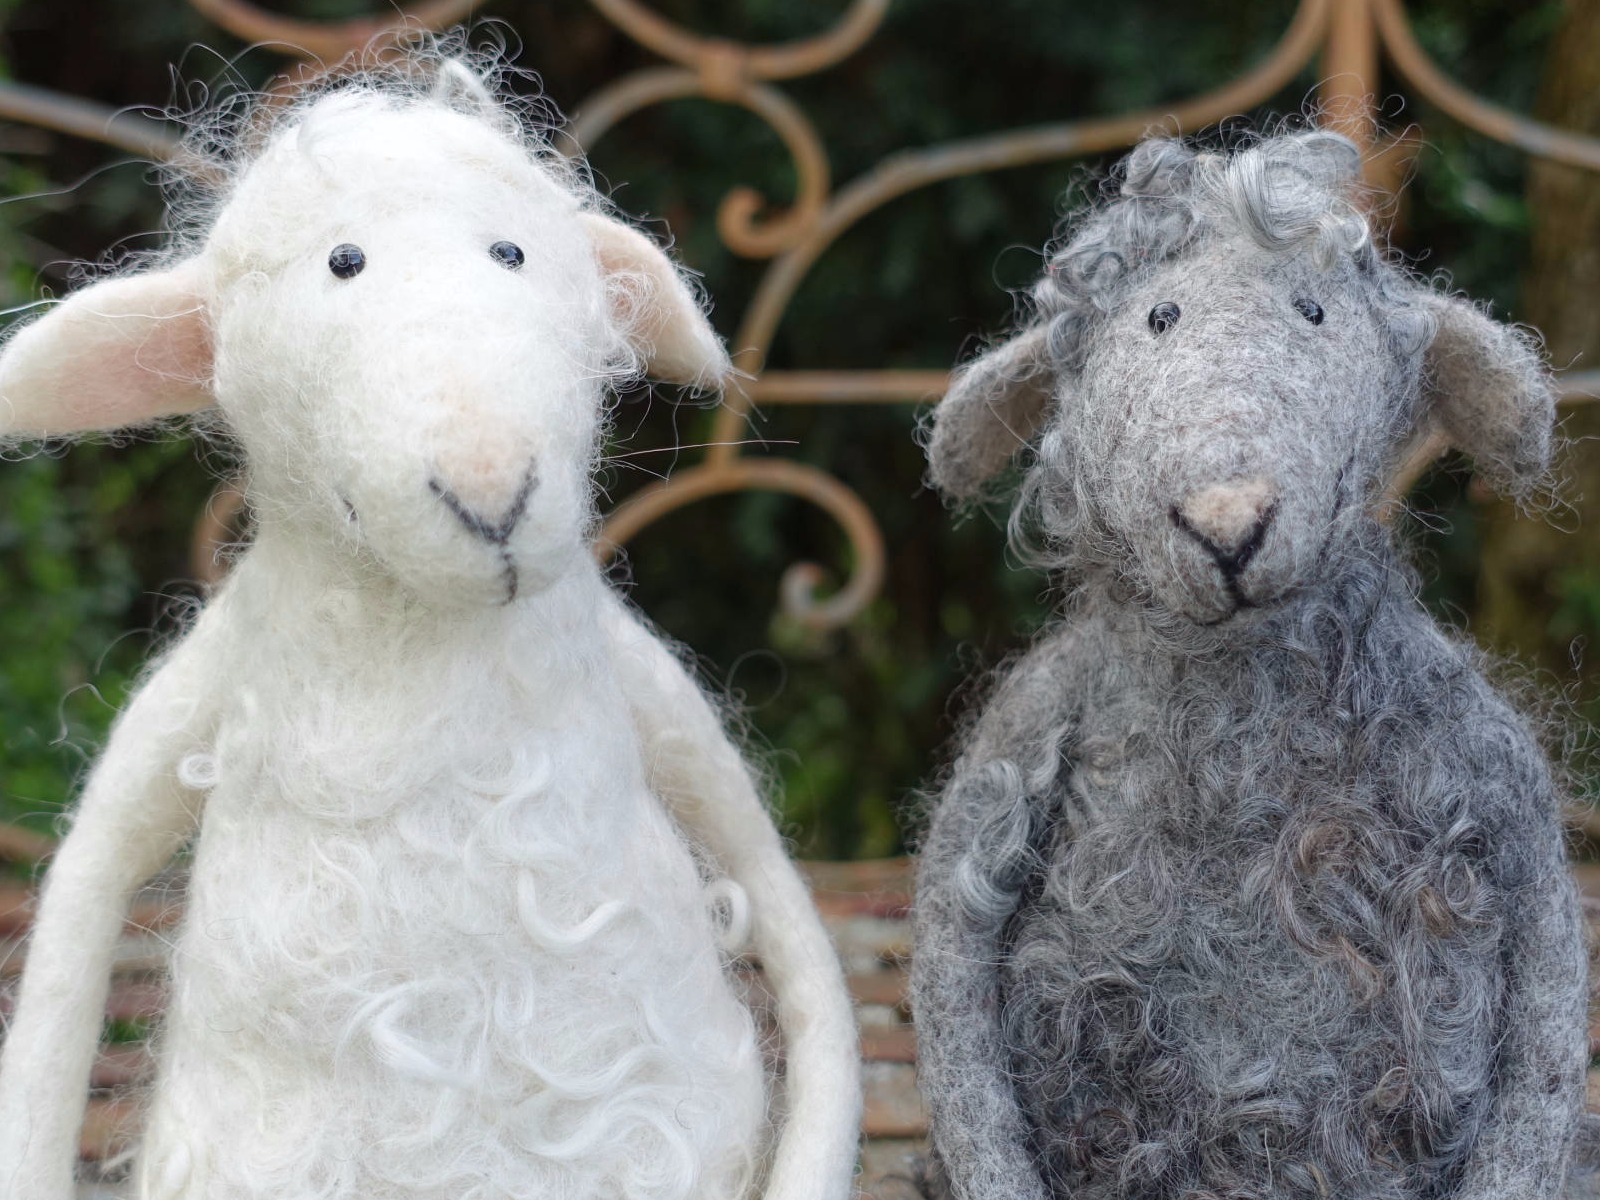 Zwei gefilzte Schafe, weiß und grau.